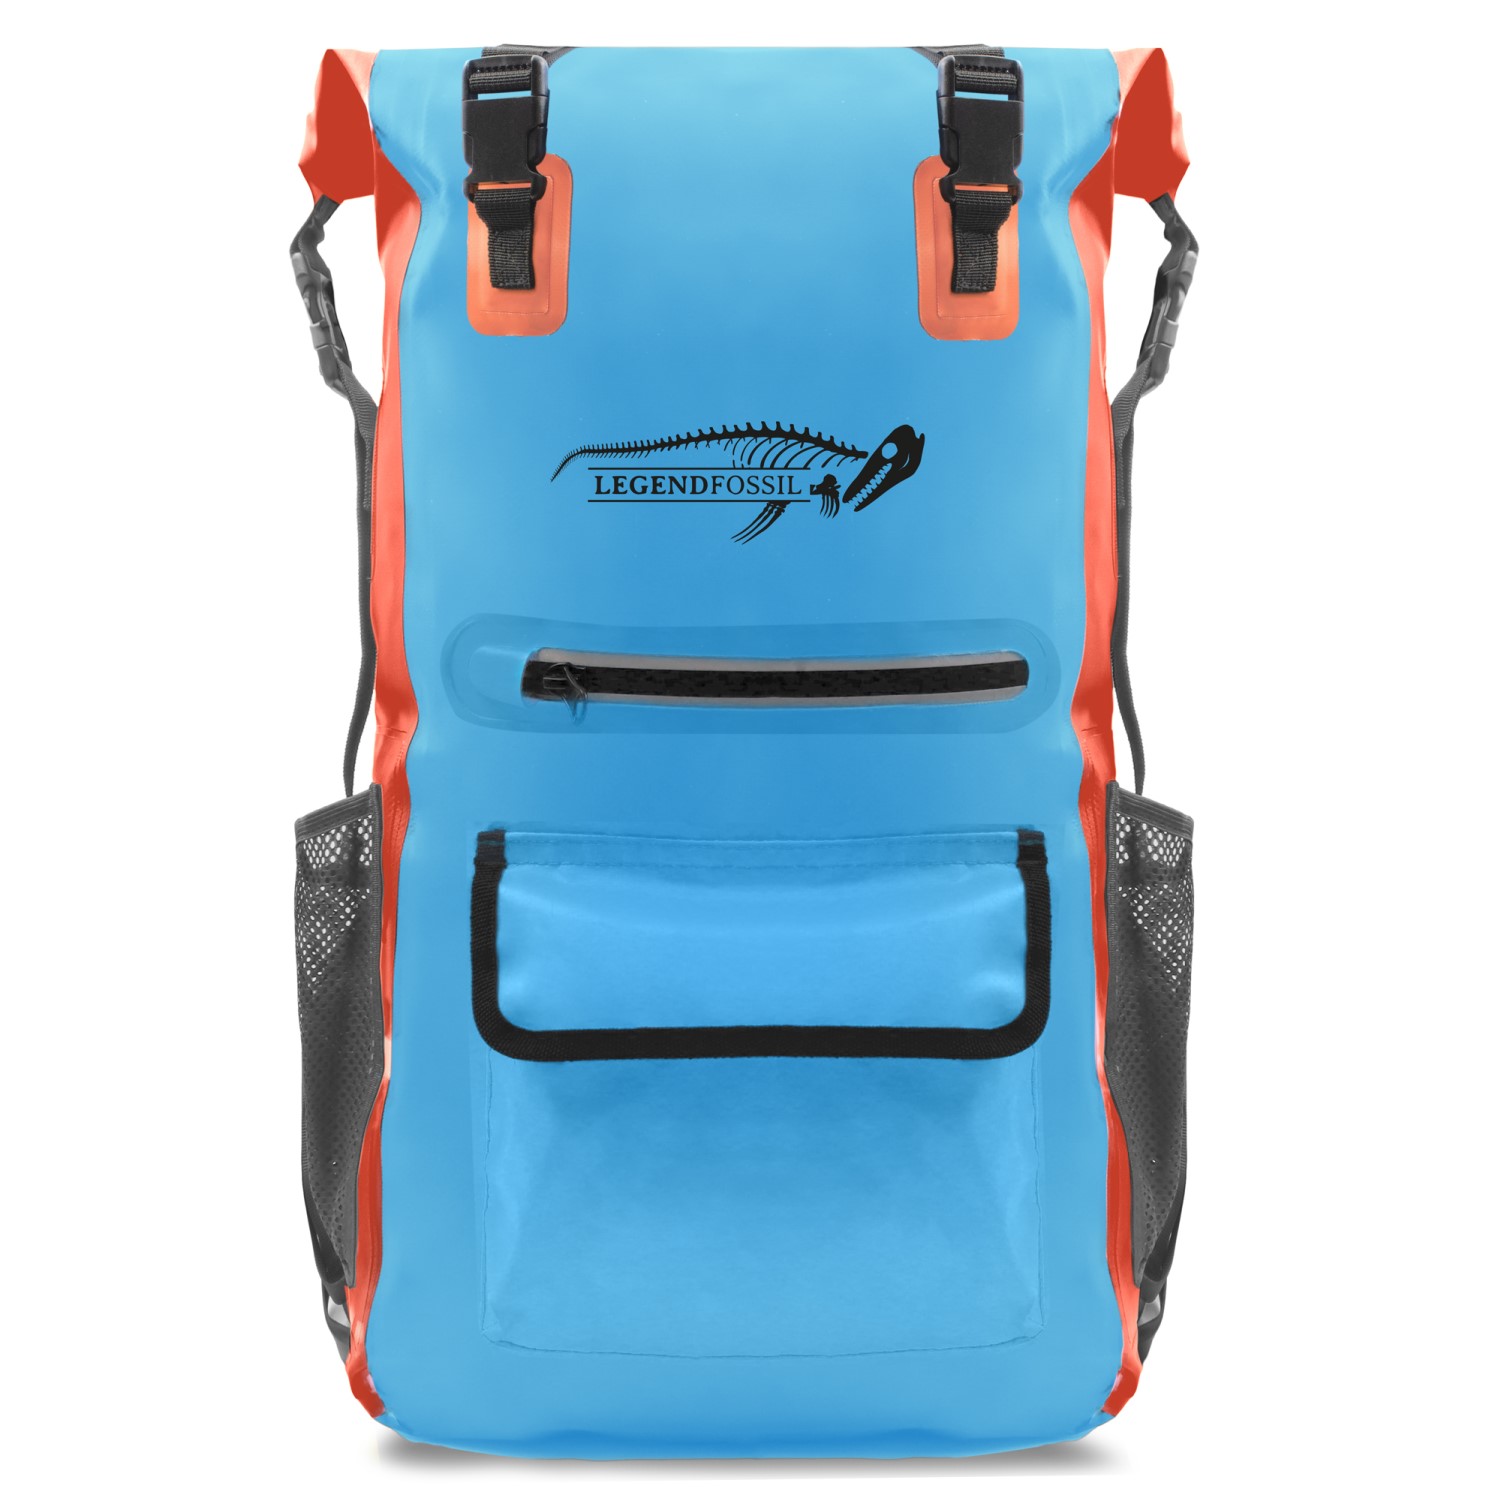 Legendfossil - Tarpaulin Rucksack Traveller - Bleu-Orange - 30L - Waterdicht - Rugzak - Backpack - Blauw - Oranje